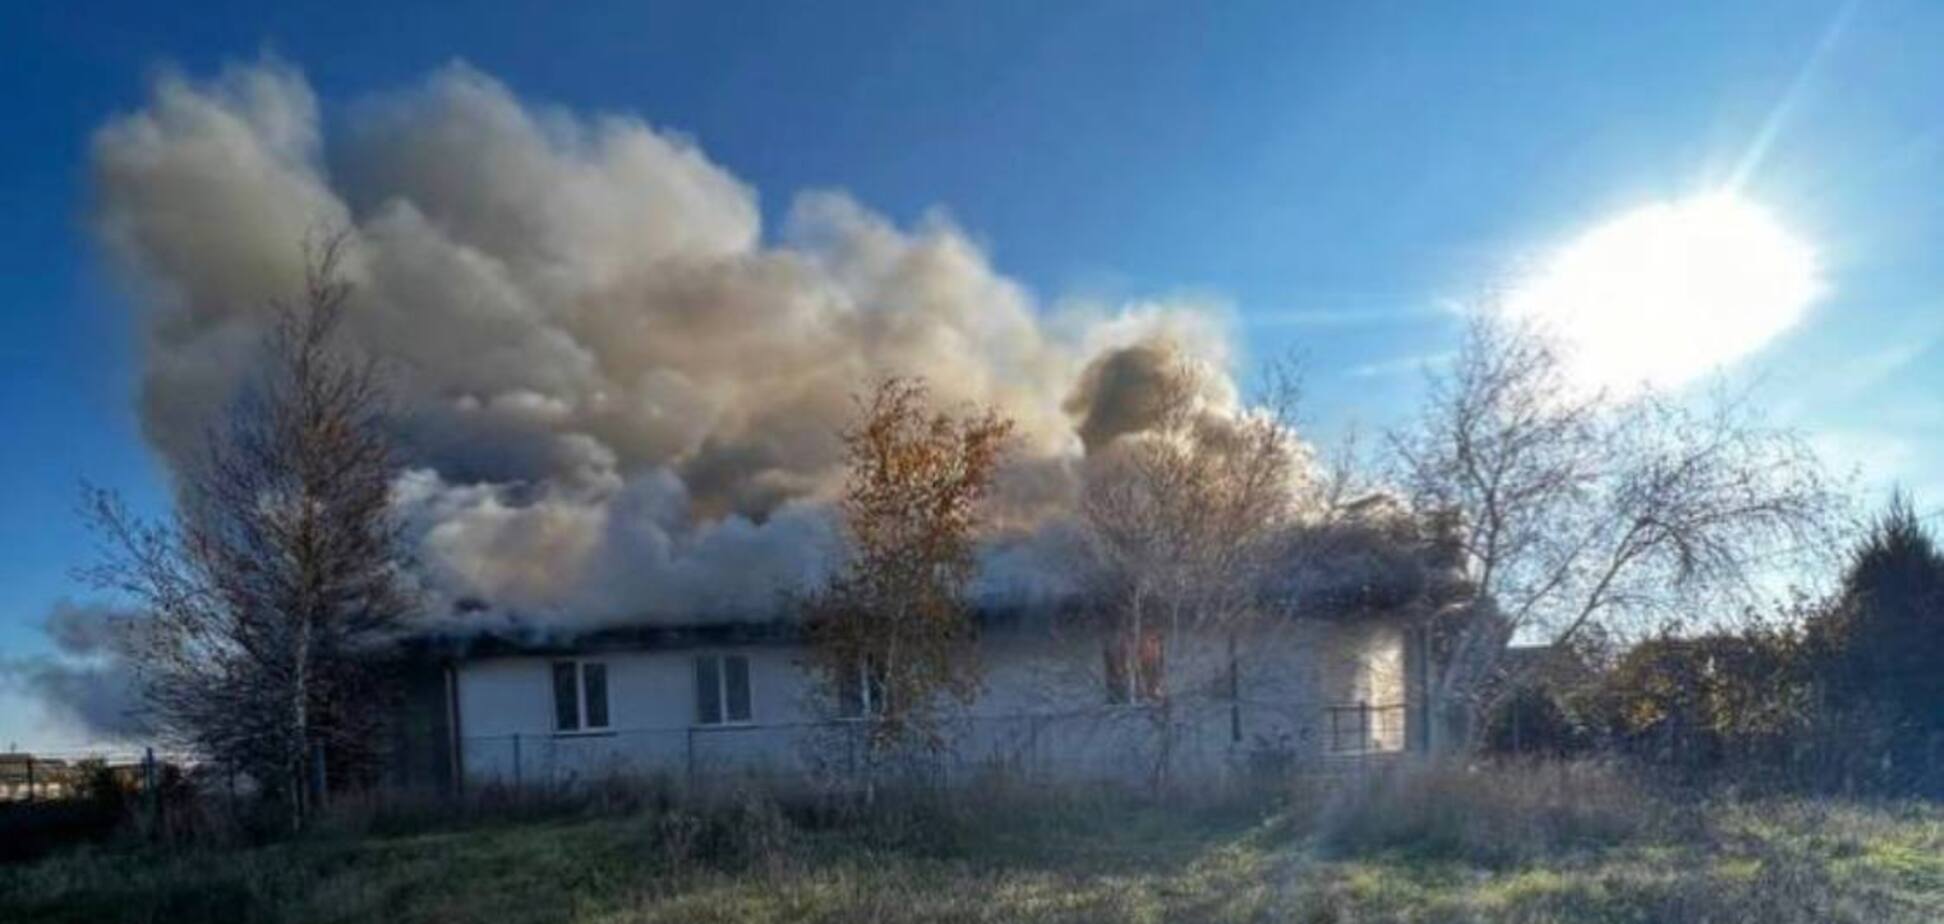 Партизани спалили штаб окупантів у сільській церкві під Мелітополем. Фото і відео